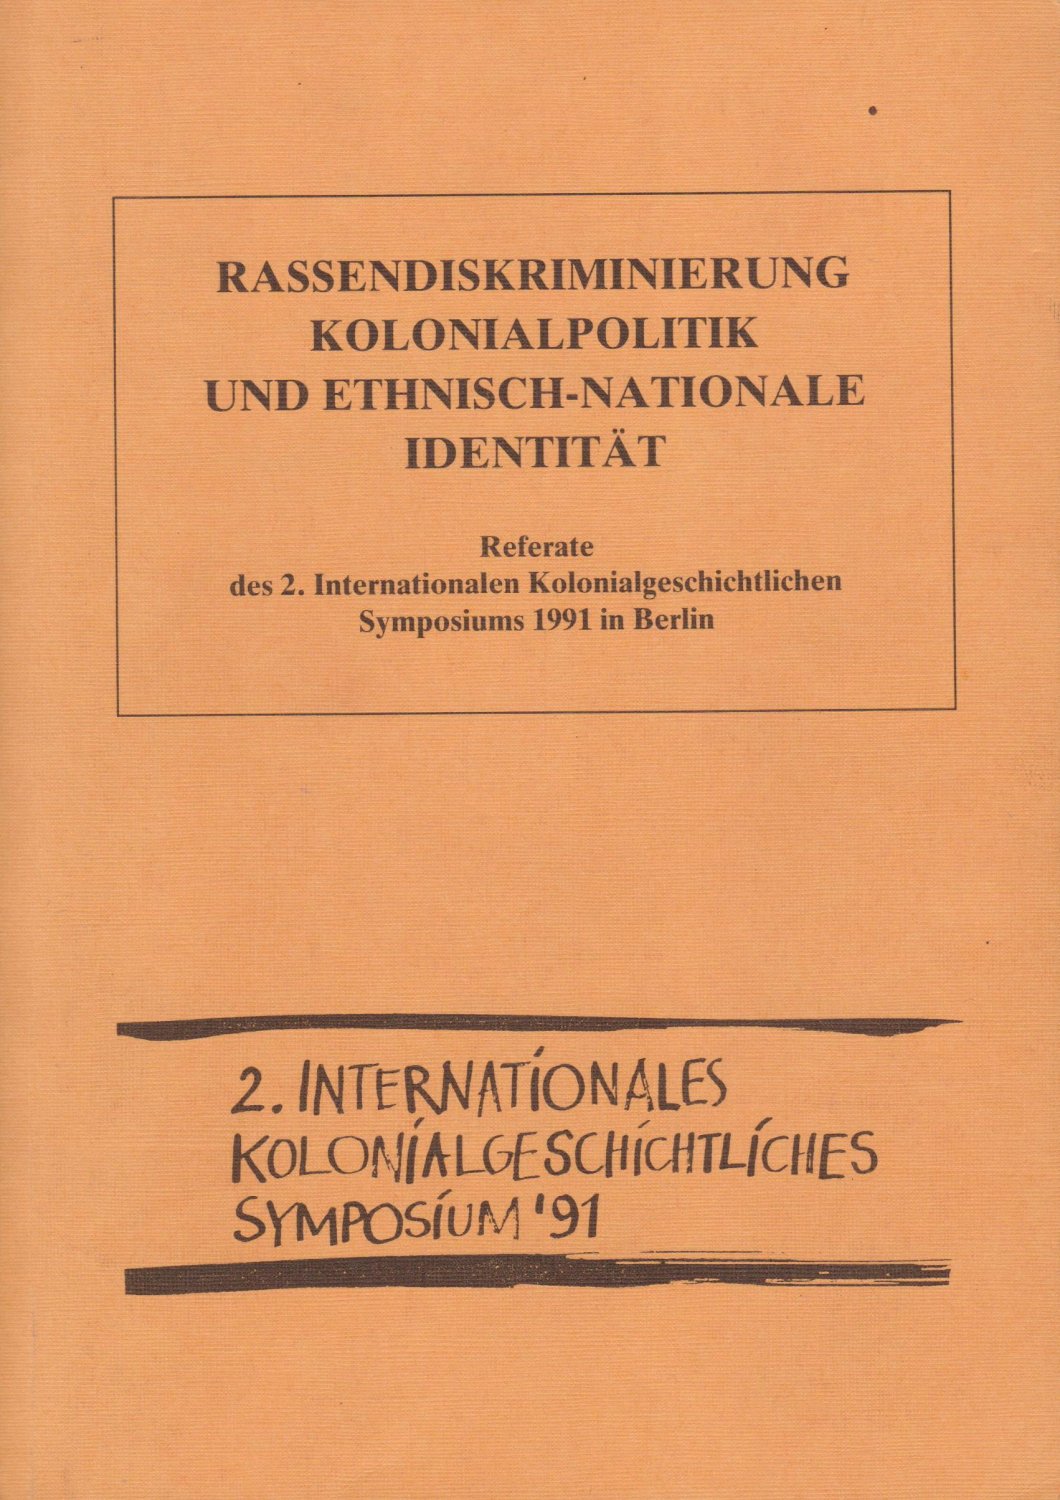 WAGNER, Wilfried (Herausgeber):  Rassendiskriminierung, Kolonialpolitik und ethnisch-nationale Identität. Referate des 2. Internationalen Kolonialgeschichtlichen Symposiums 1991 in Berlin. 